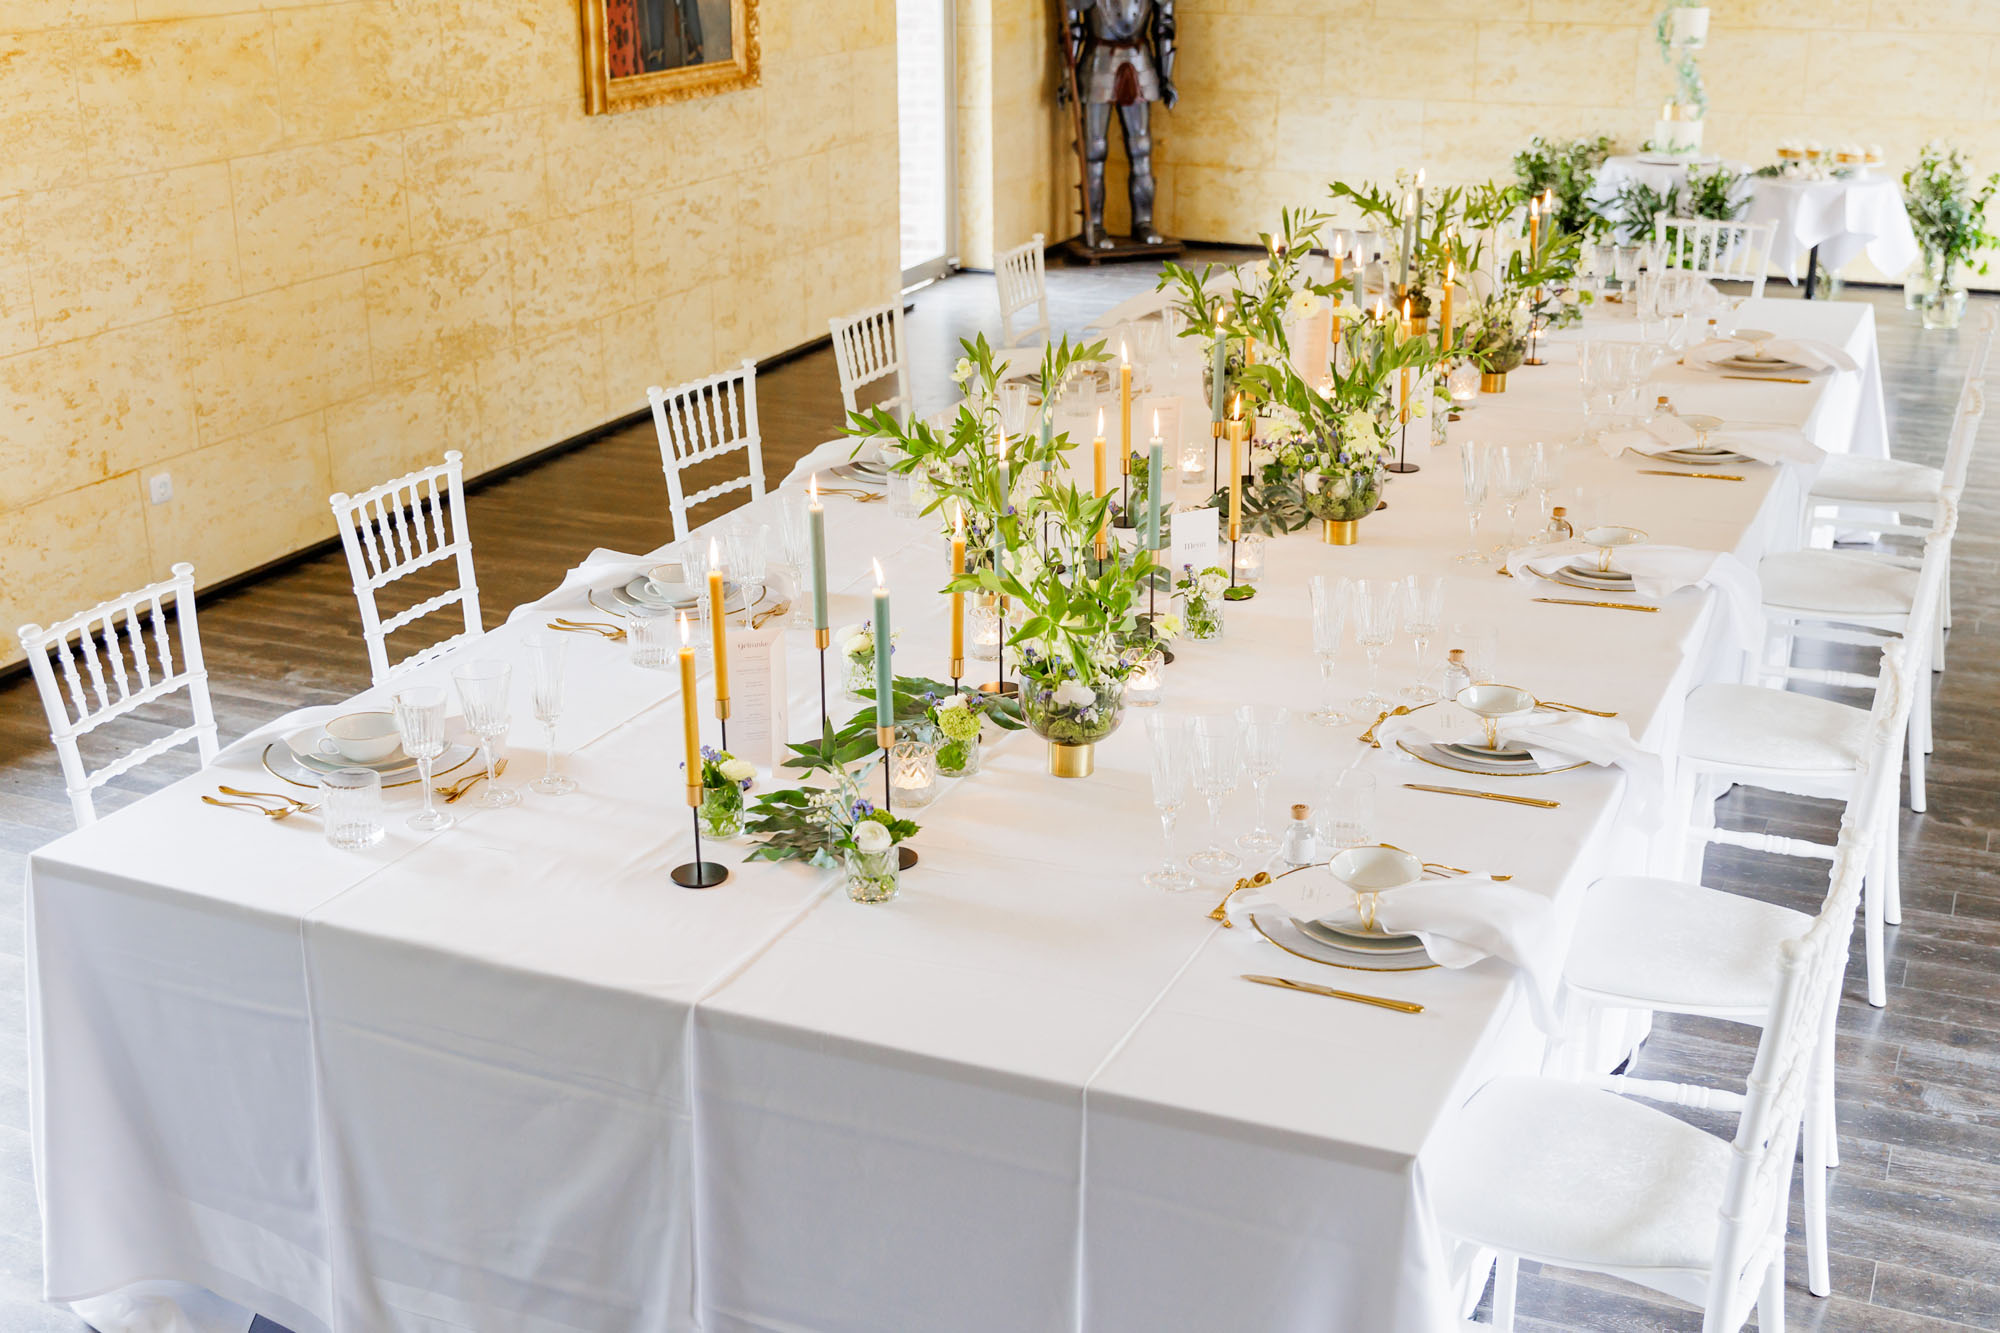 Eine wirklich jeden Gast beeindruckende Tischdekoration mit Blumenarrangements von dieblumenbinder. FOTO: Christian Clarke